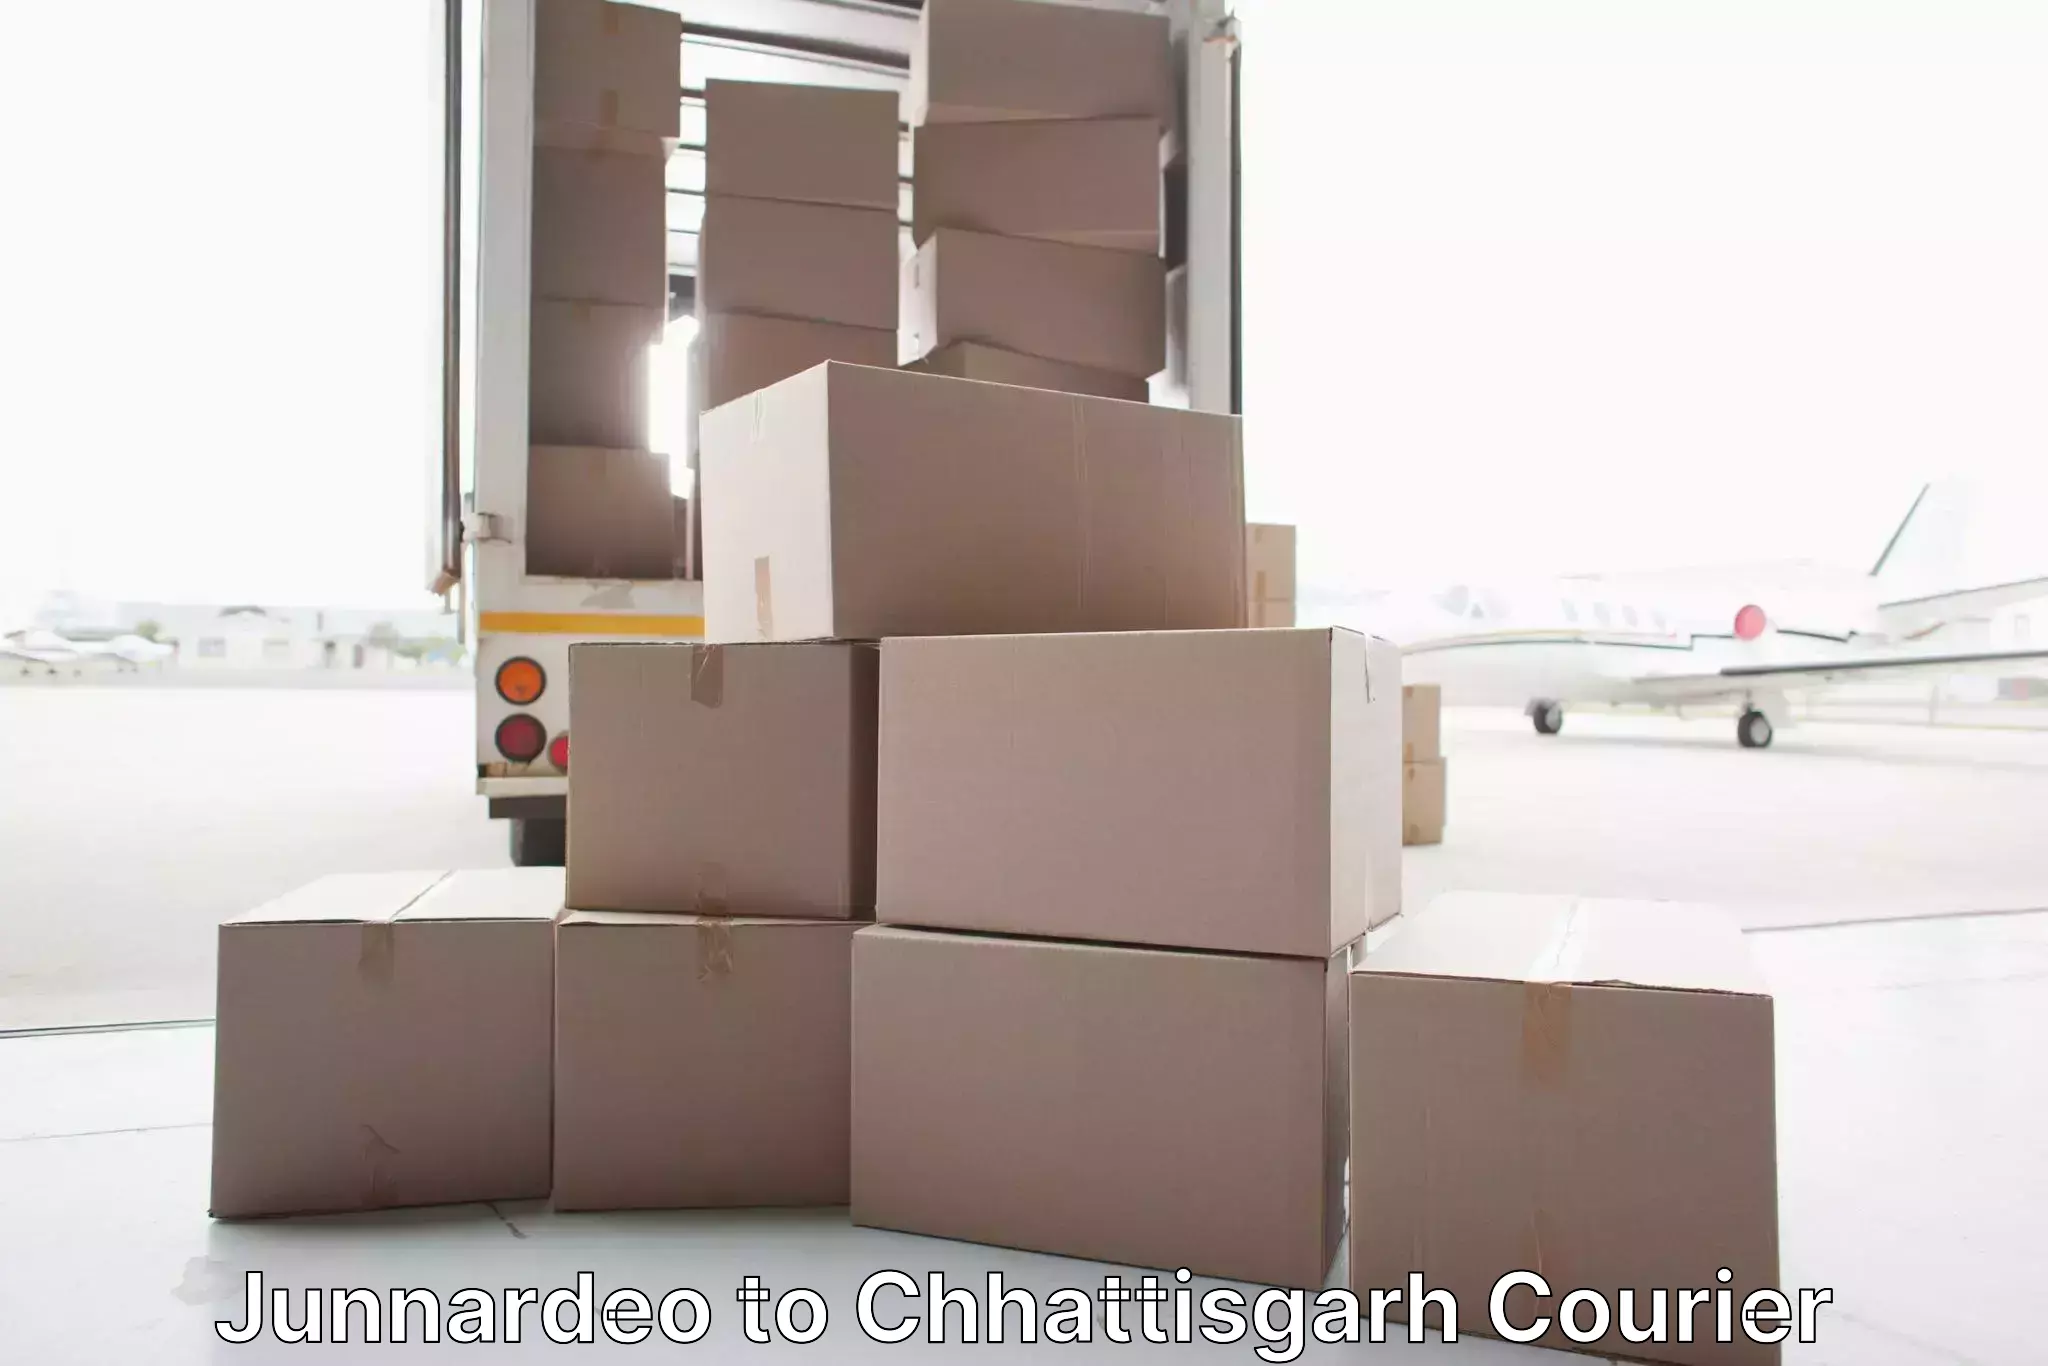 Efficient moving company Junnardeo to Bhatapara